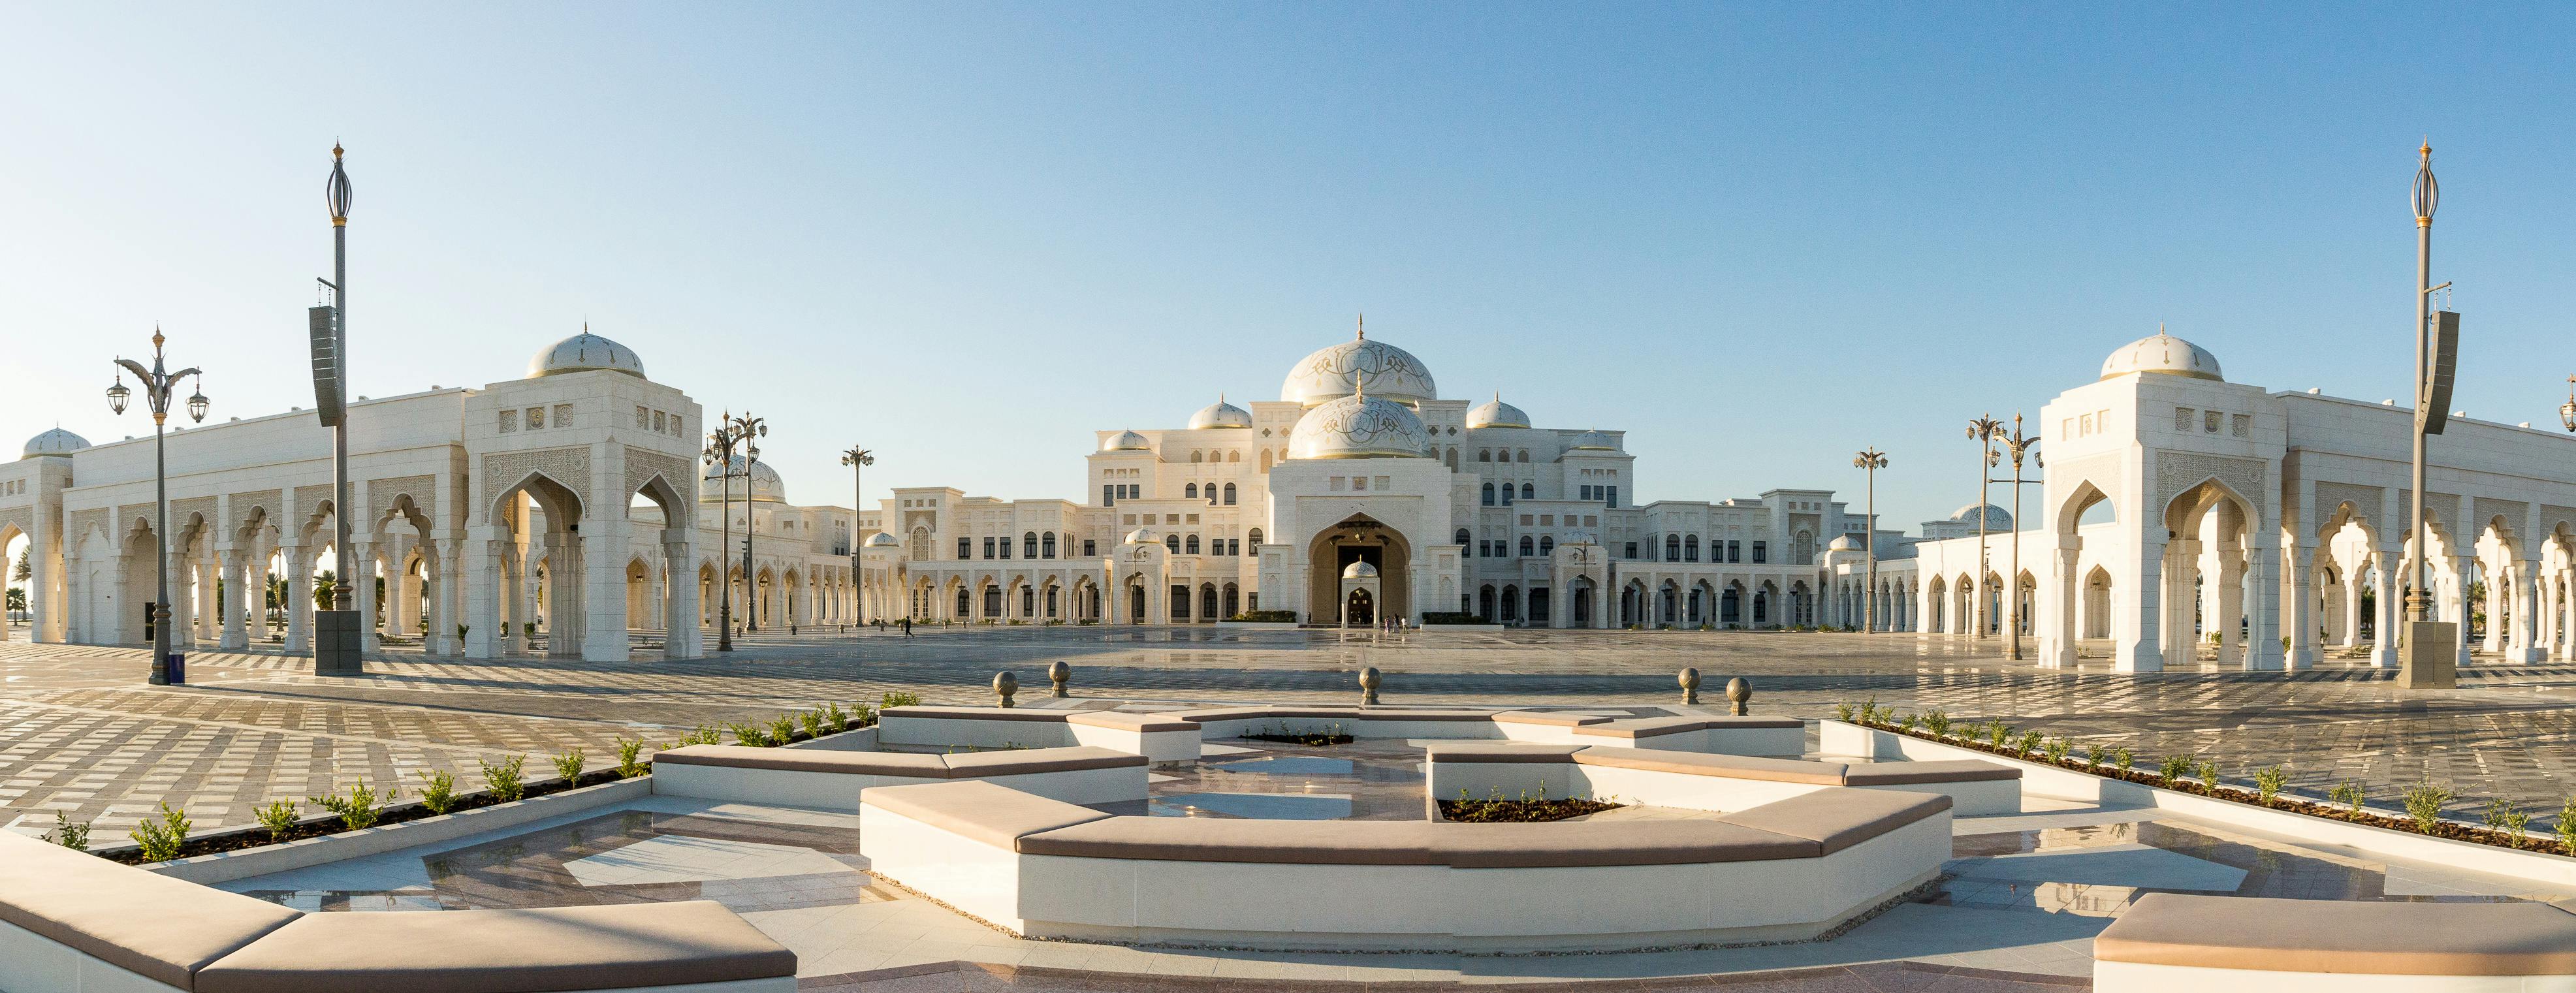 Qasr Al Watan - O Palácio Presidencial